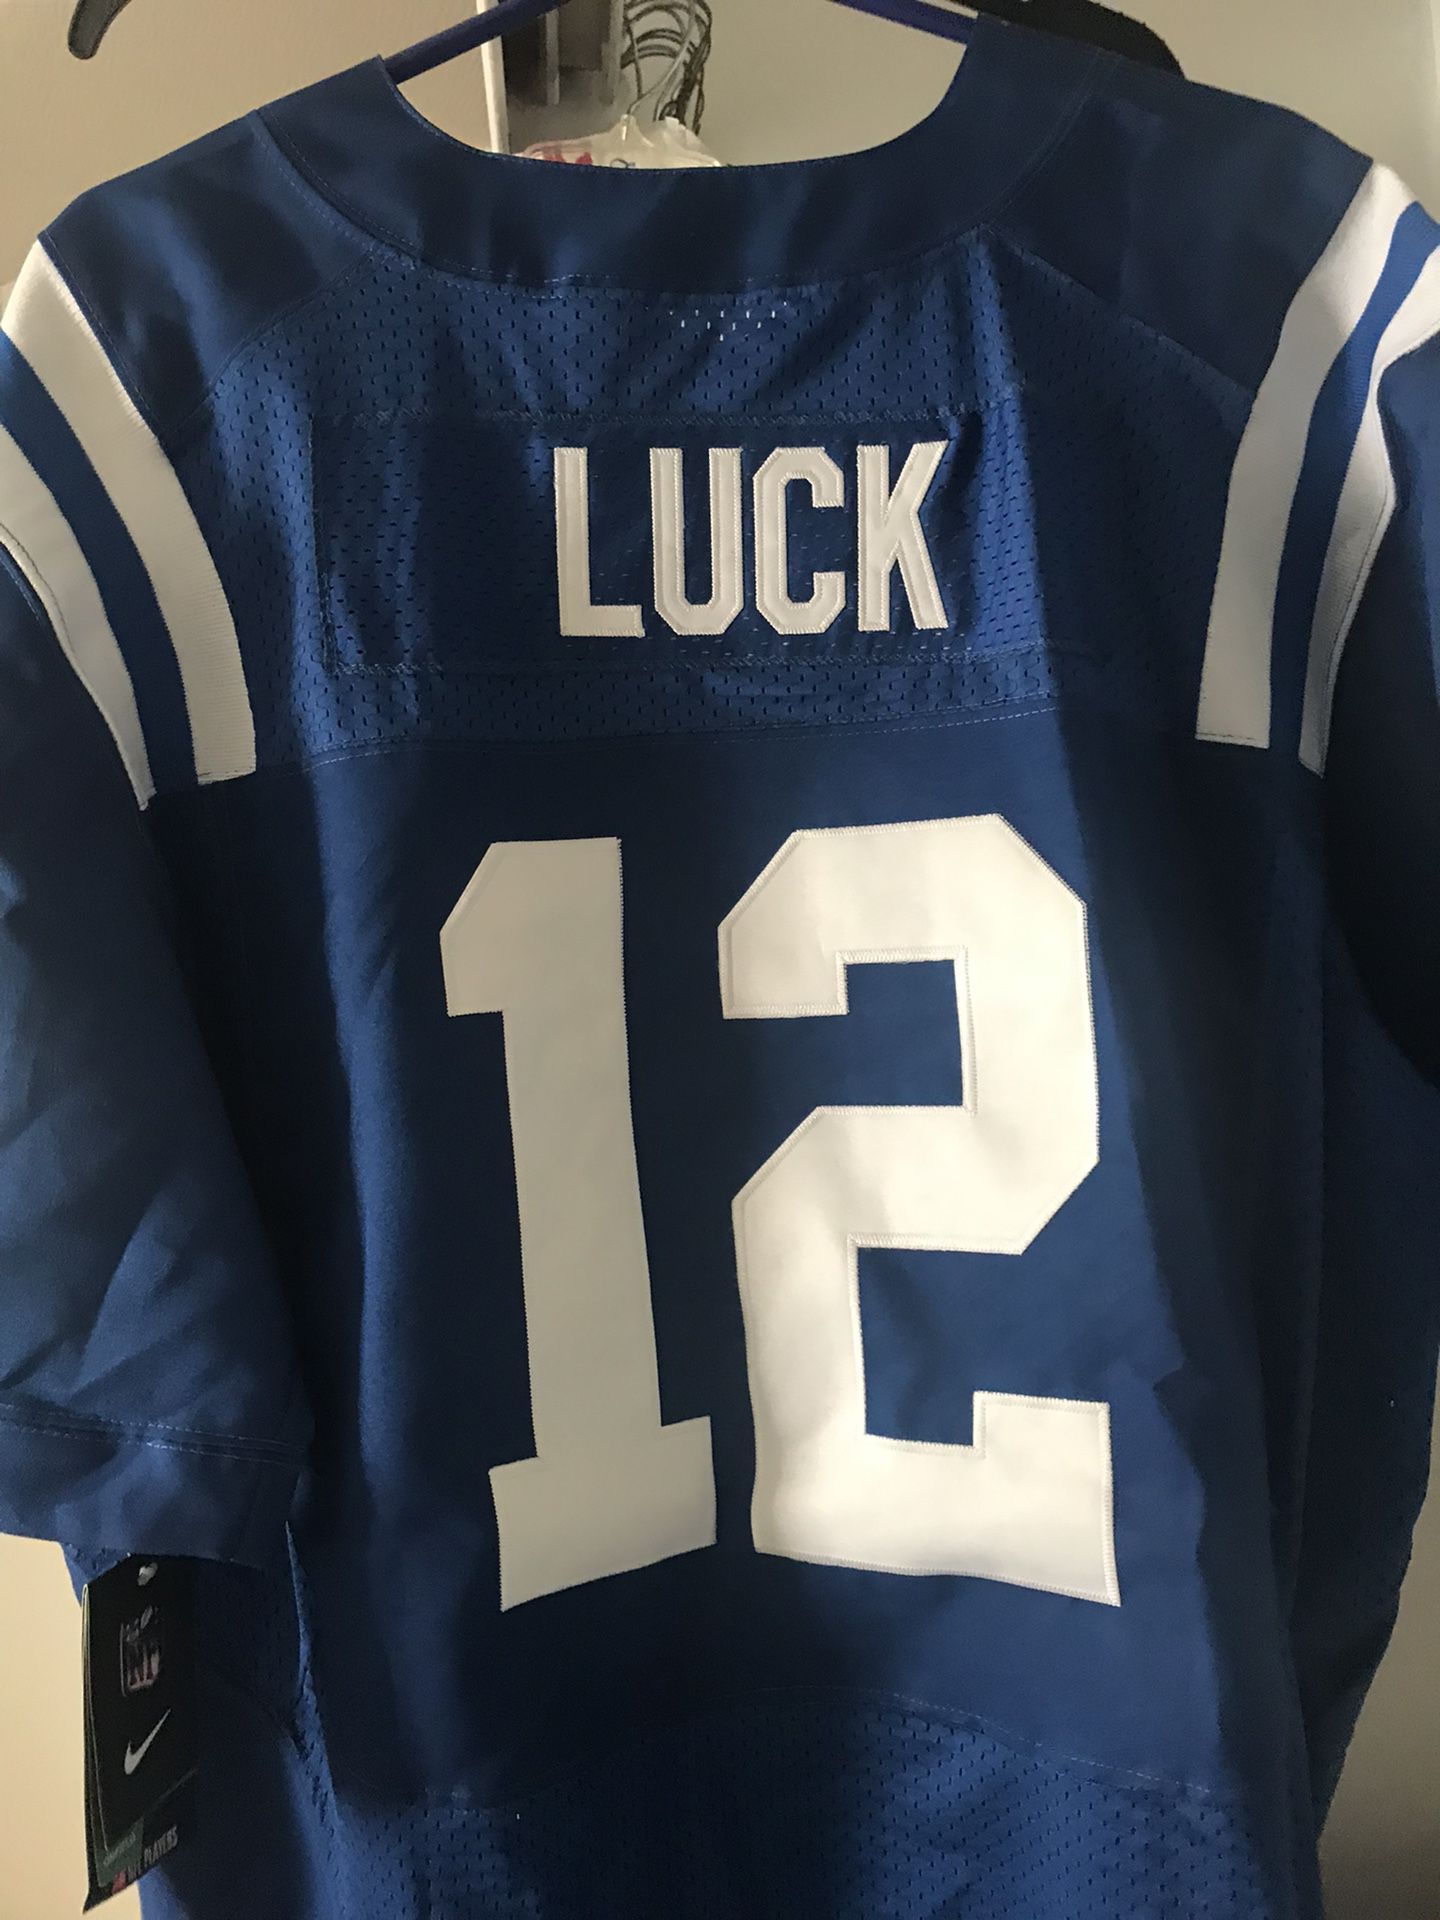 New Luck Jersey Shirt 